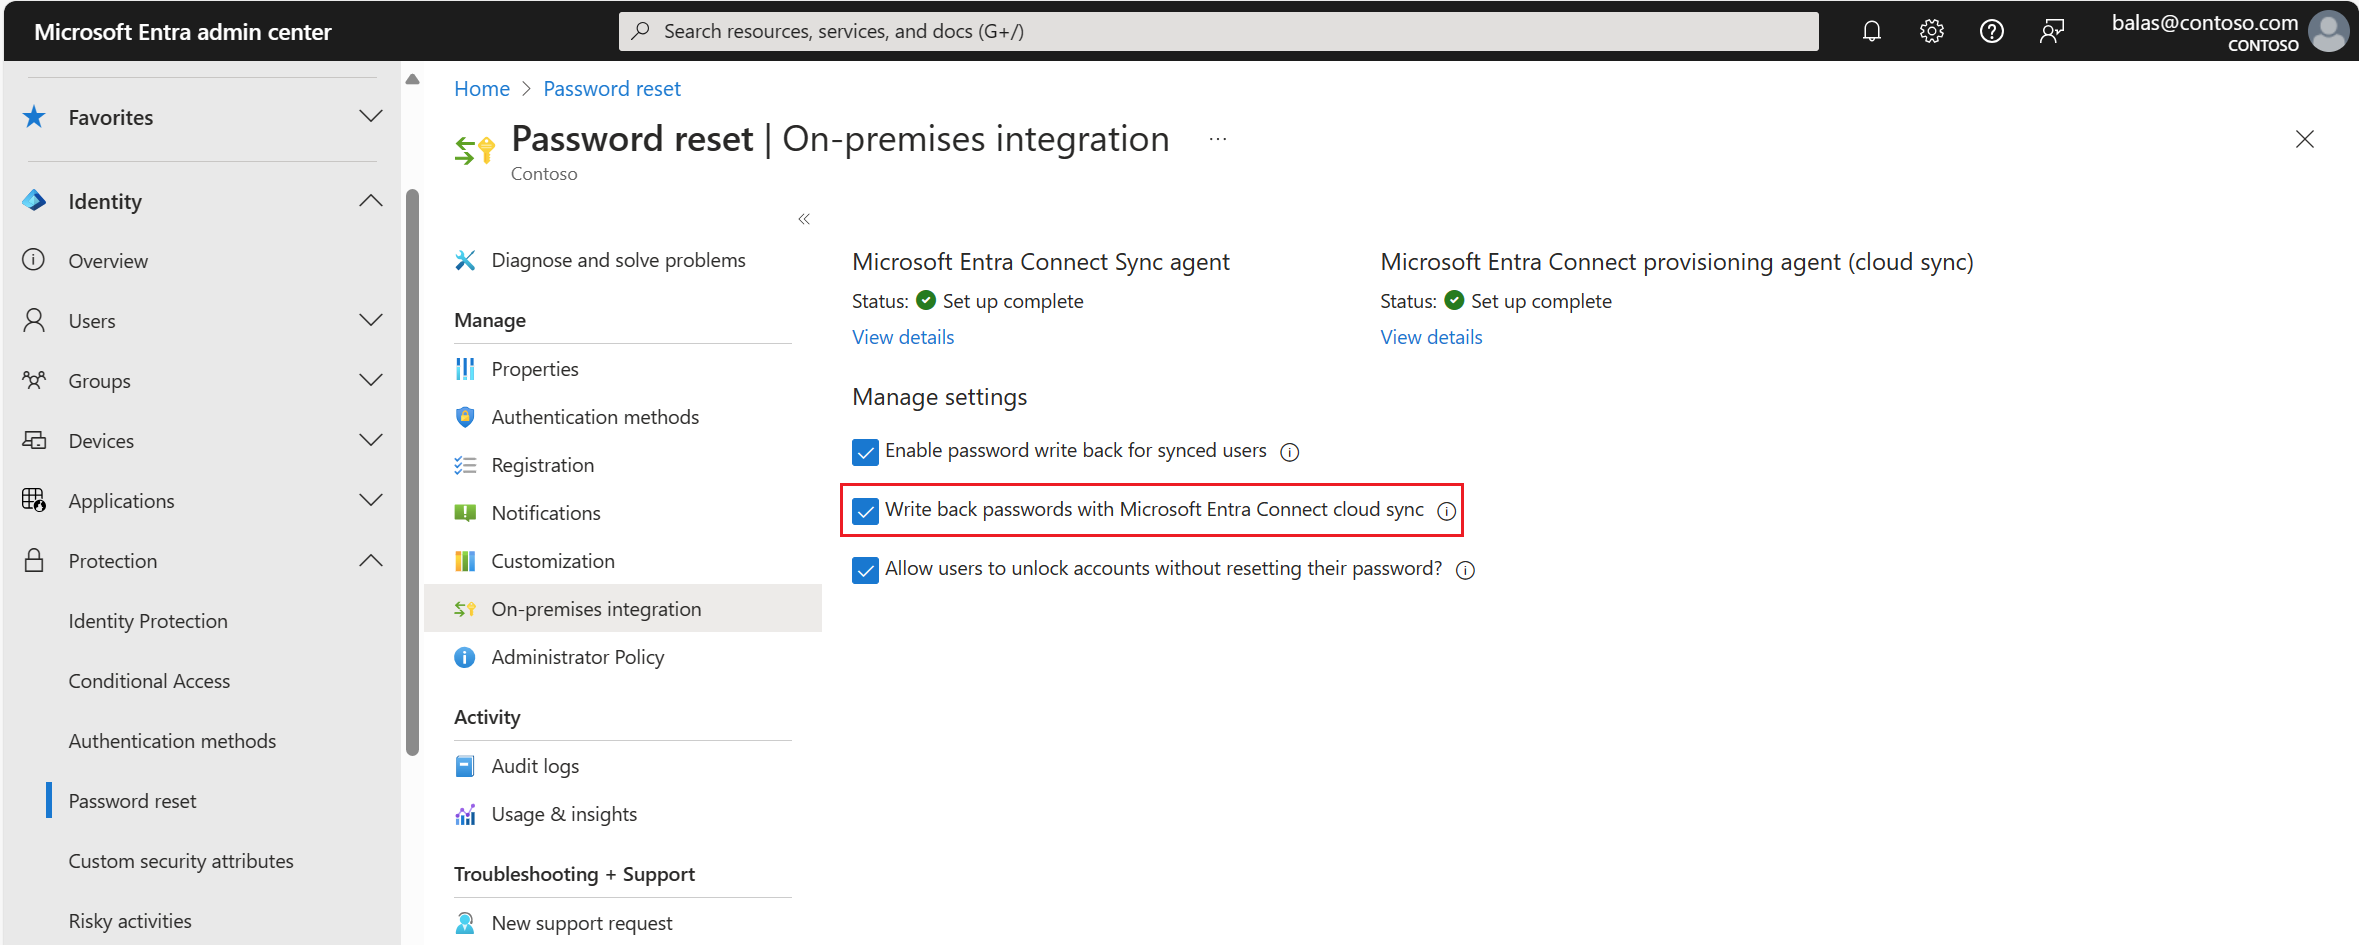 針對內部部署整合啟用Microsoft Entra識別符的密碼回寫螢幕快照。